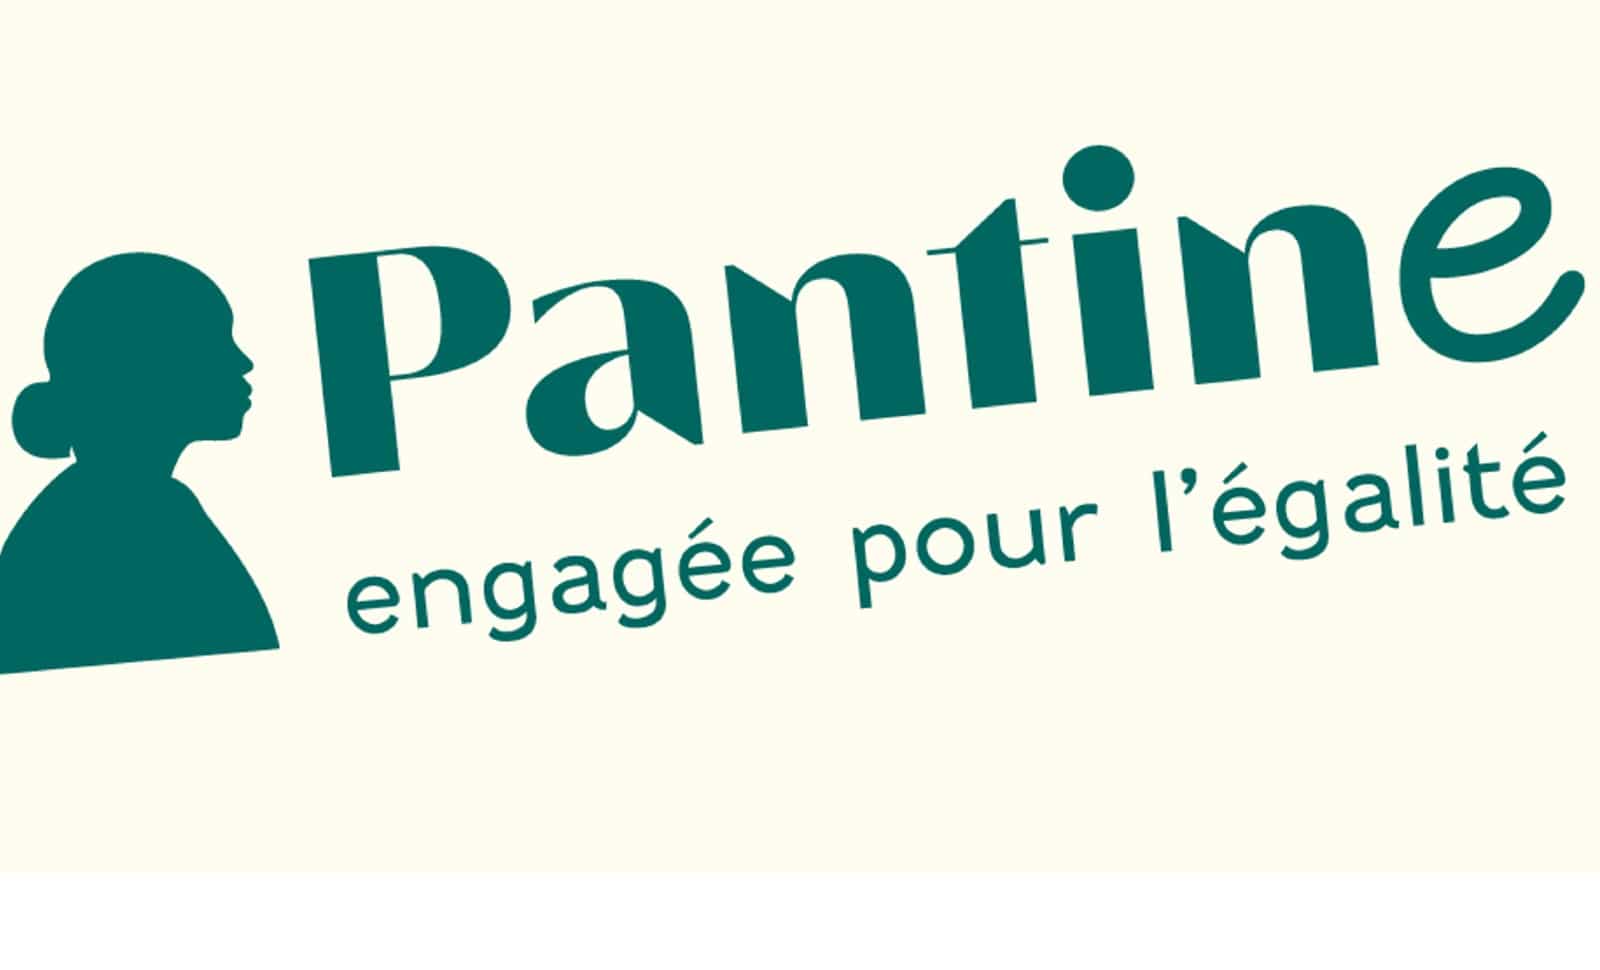 Pantin renommée «Pantine»: les précédents historiques